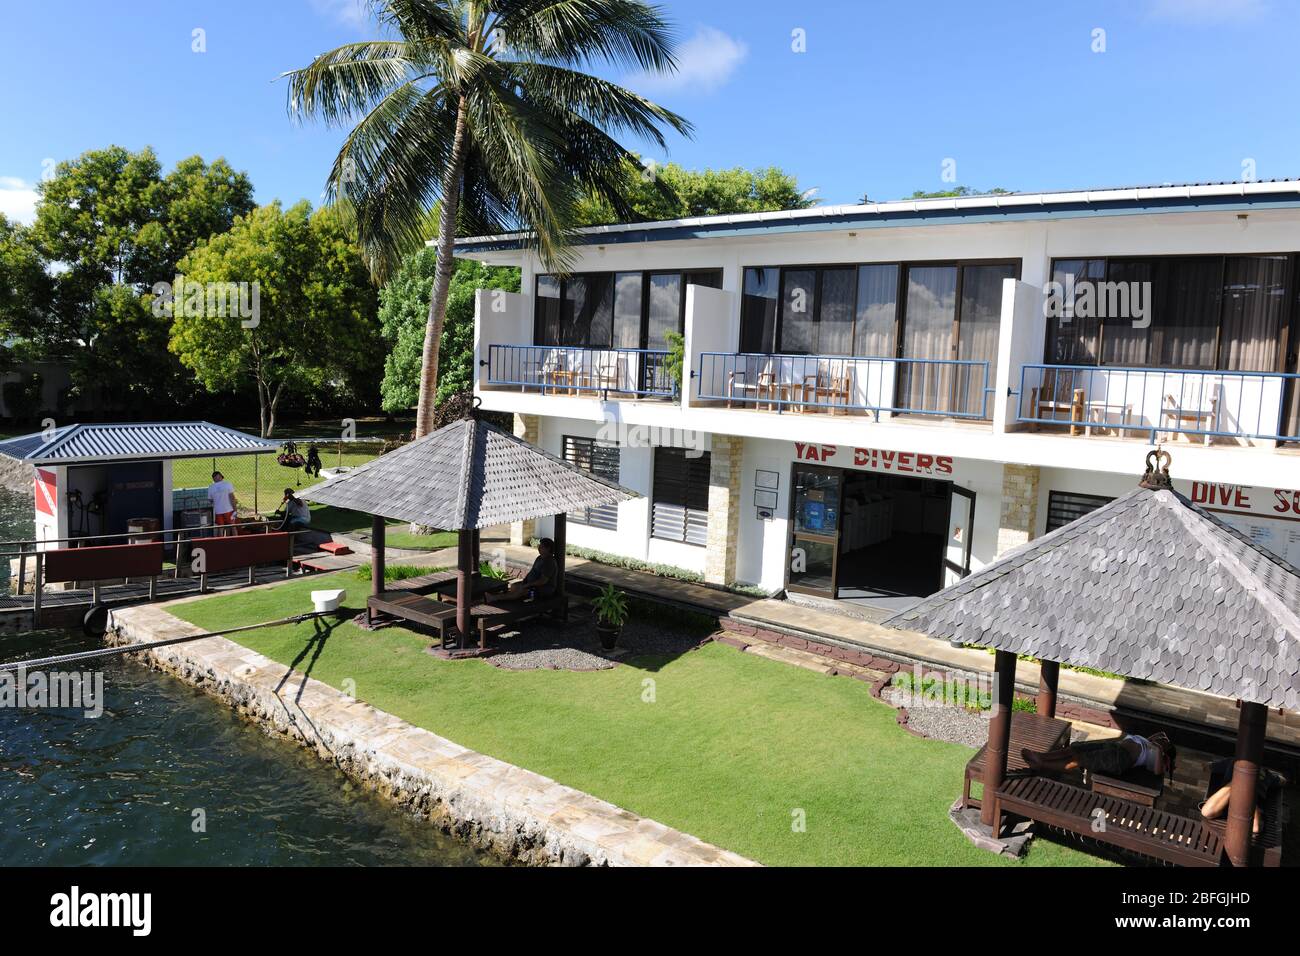 Hotel auf Yap, Hauptstadt Colonia; Pazifik, Föderierte Staaten von Mikronesien Stock Photo